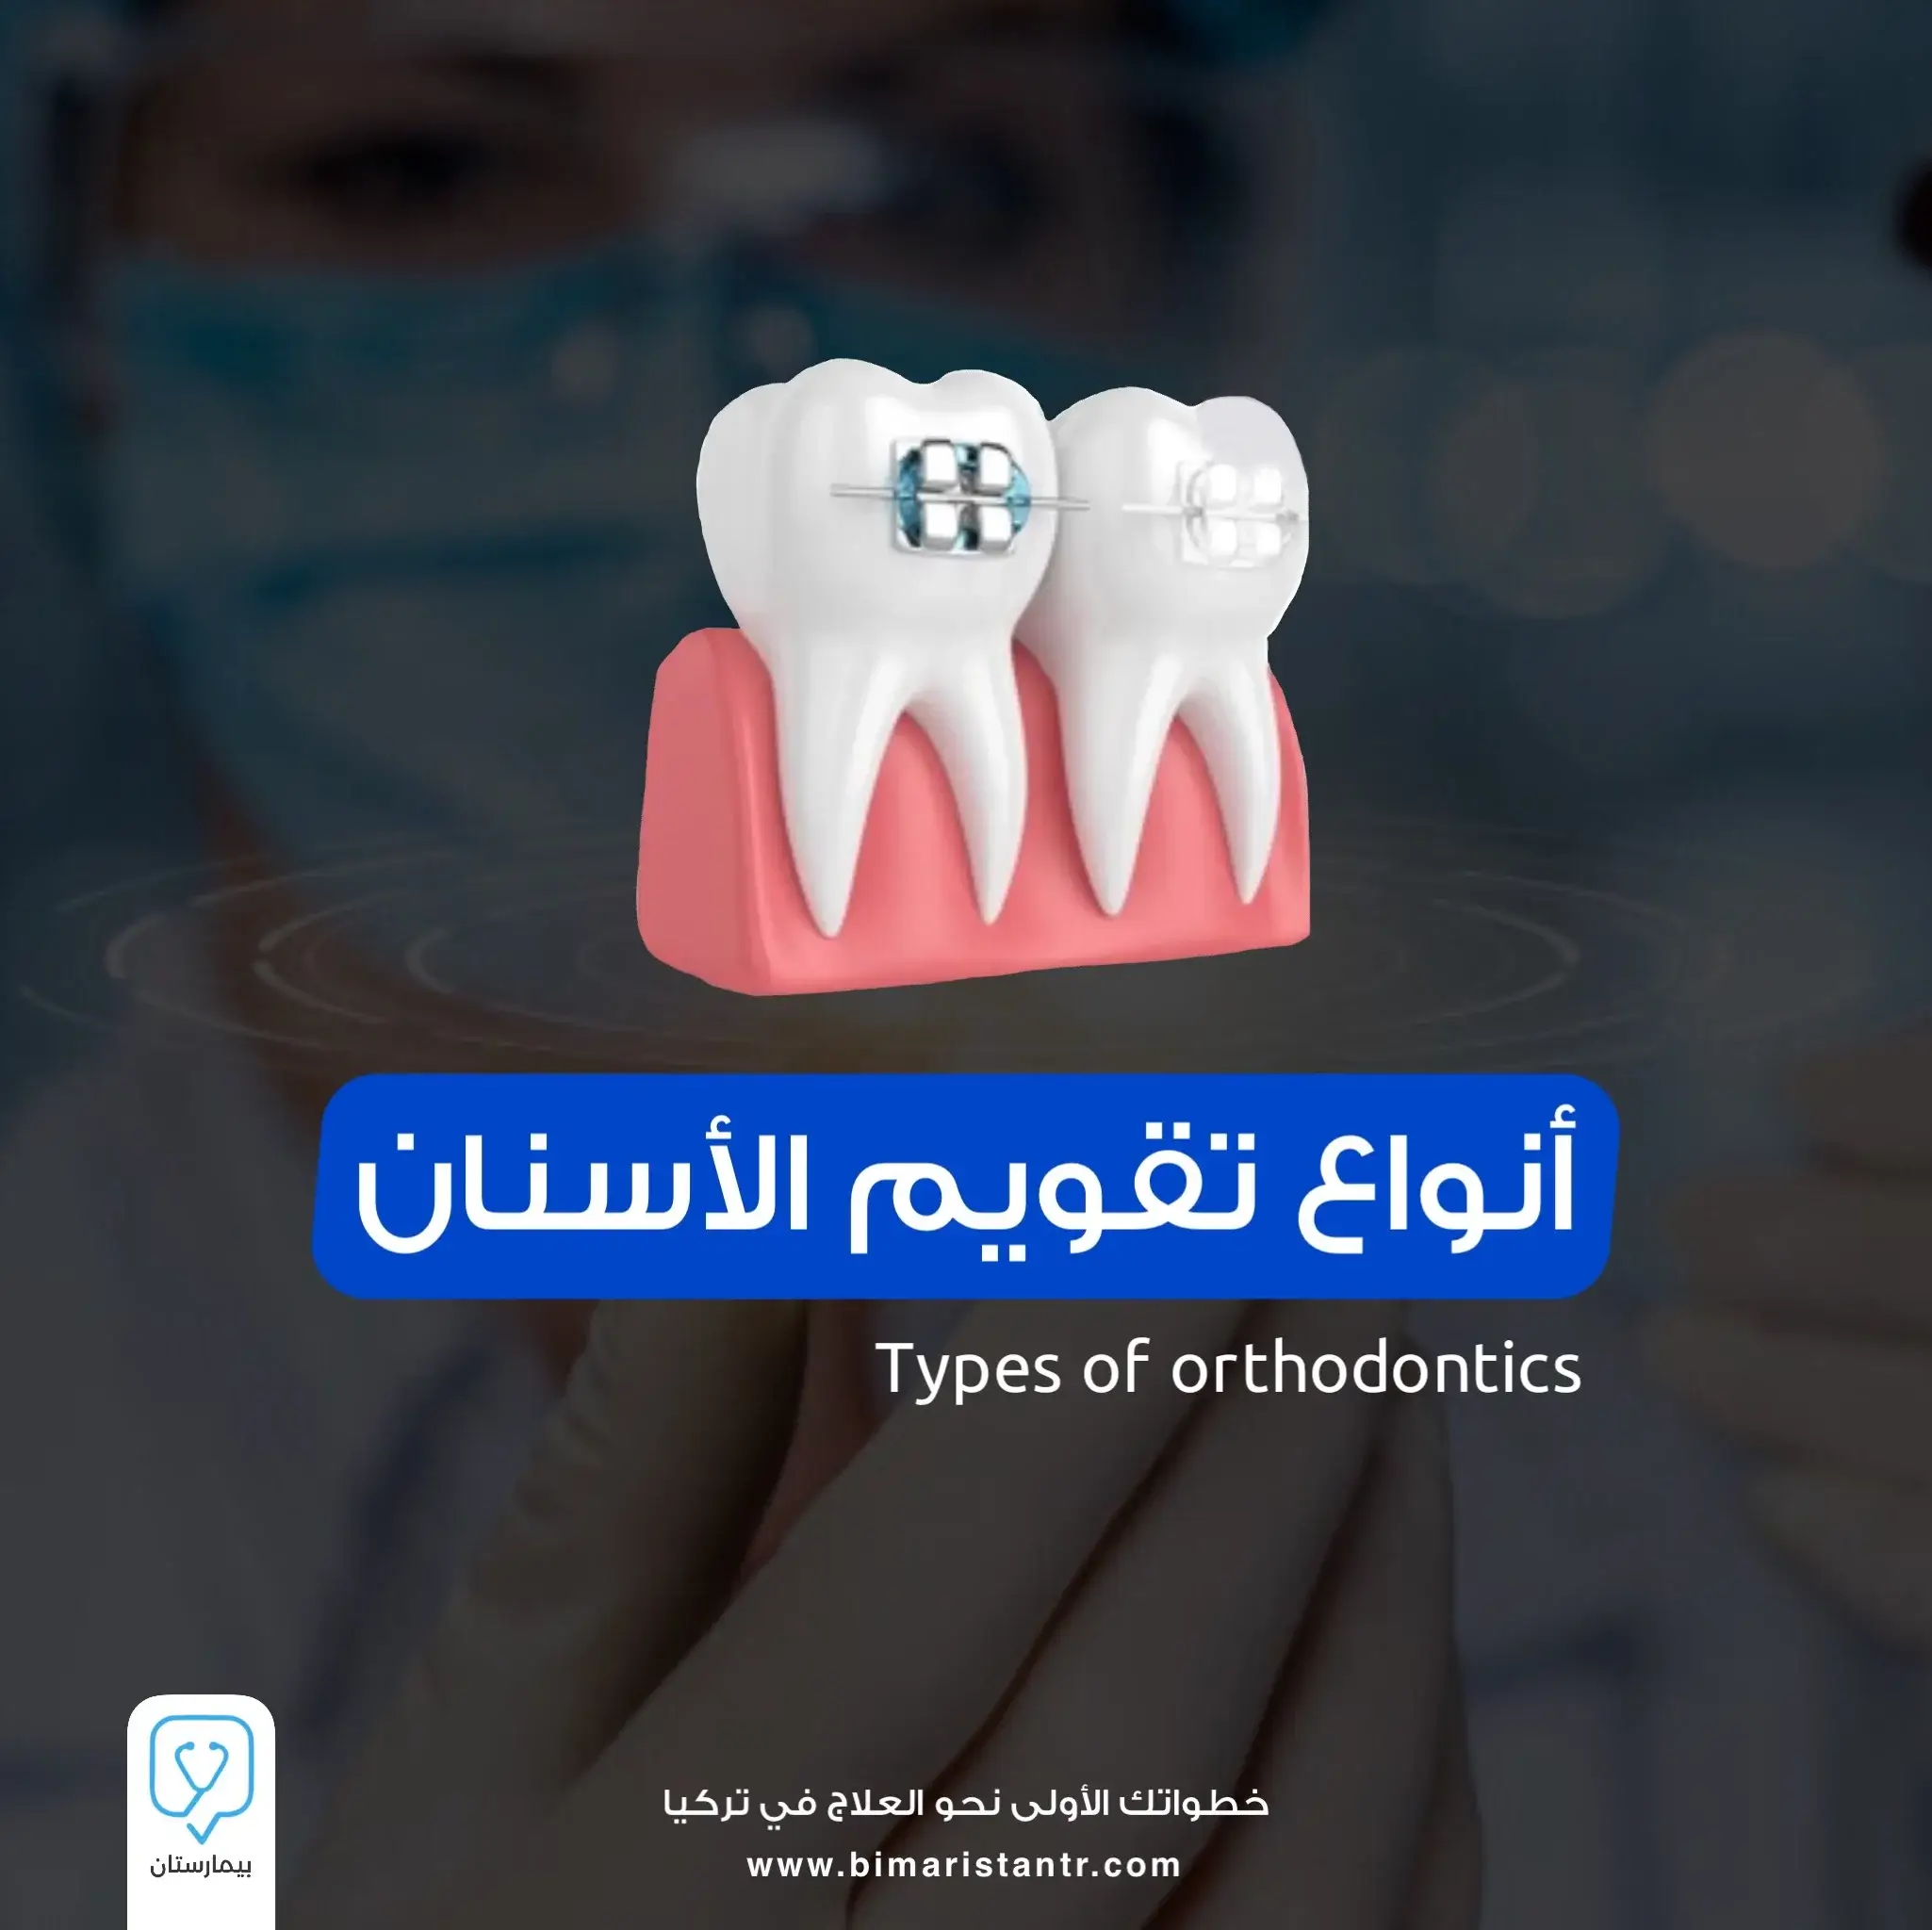 Types of orthodontics